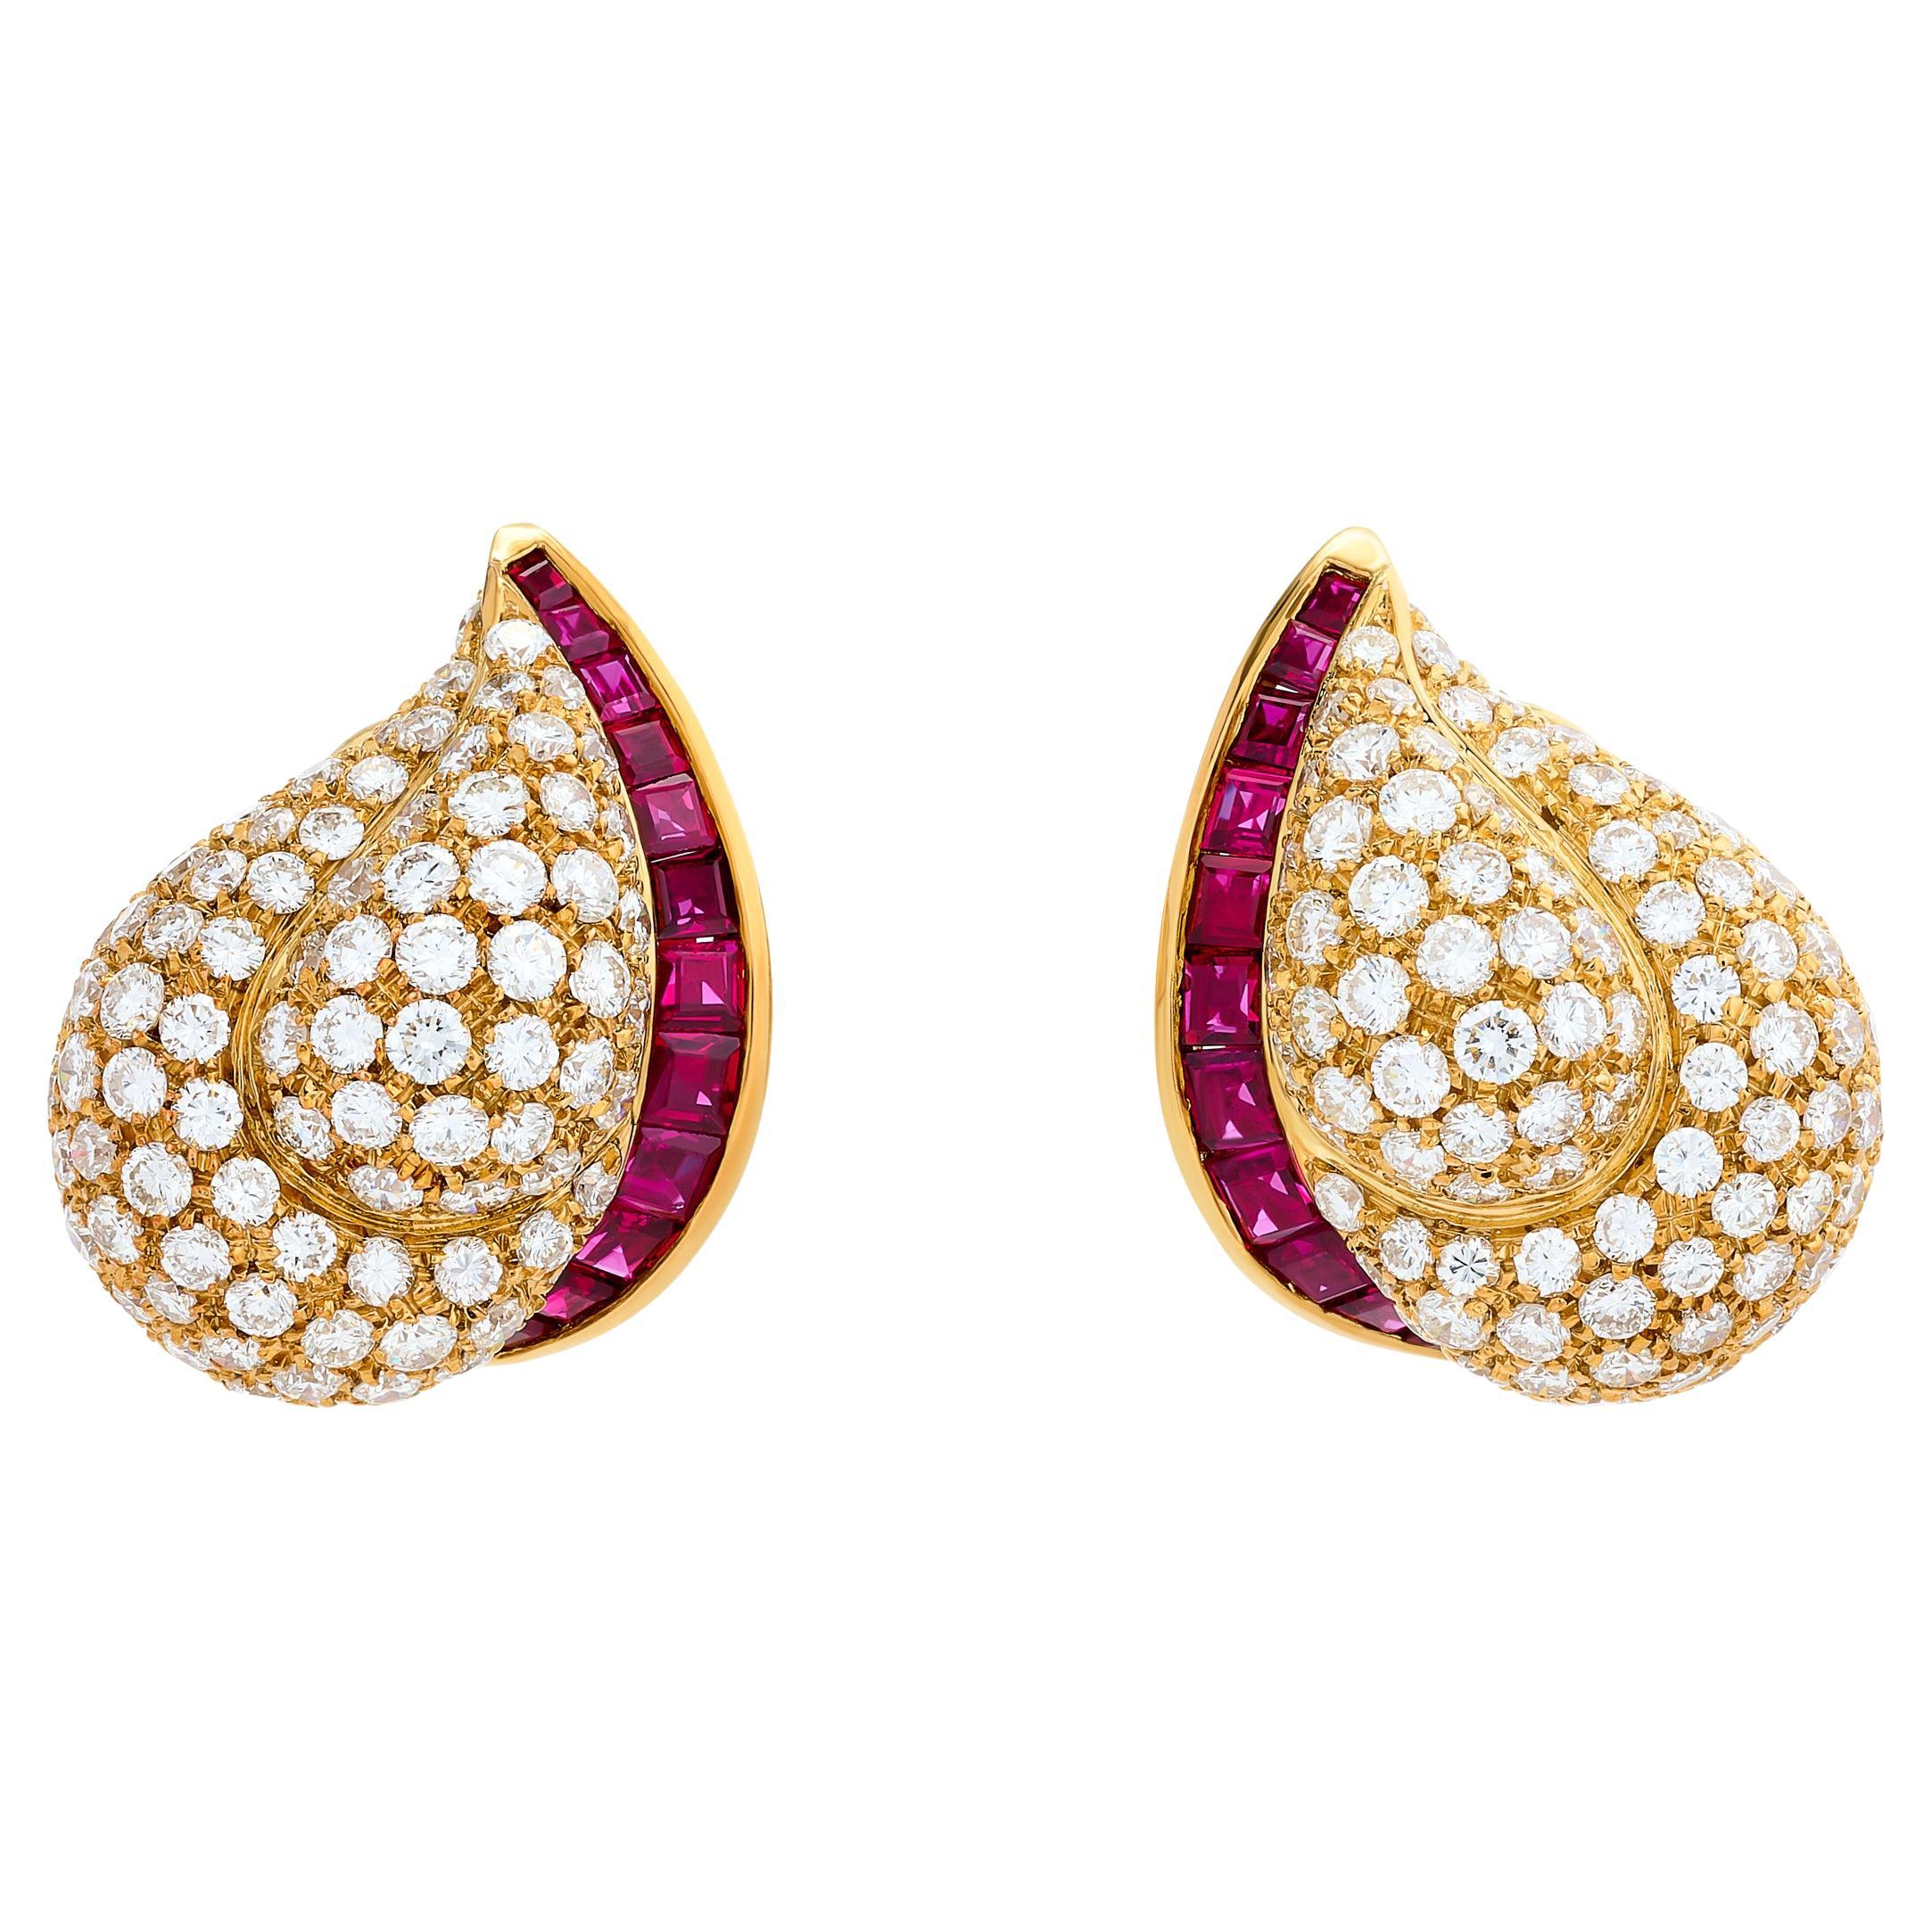 Tiffany & Company 18 Karat Yellow Gold Diamond and Ruby Paisley Earrings